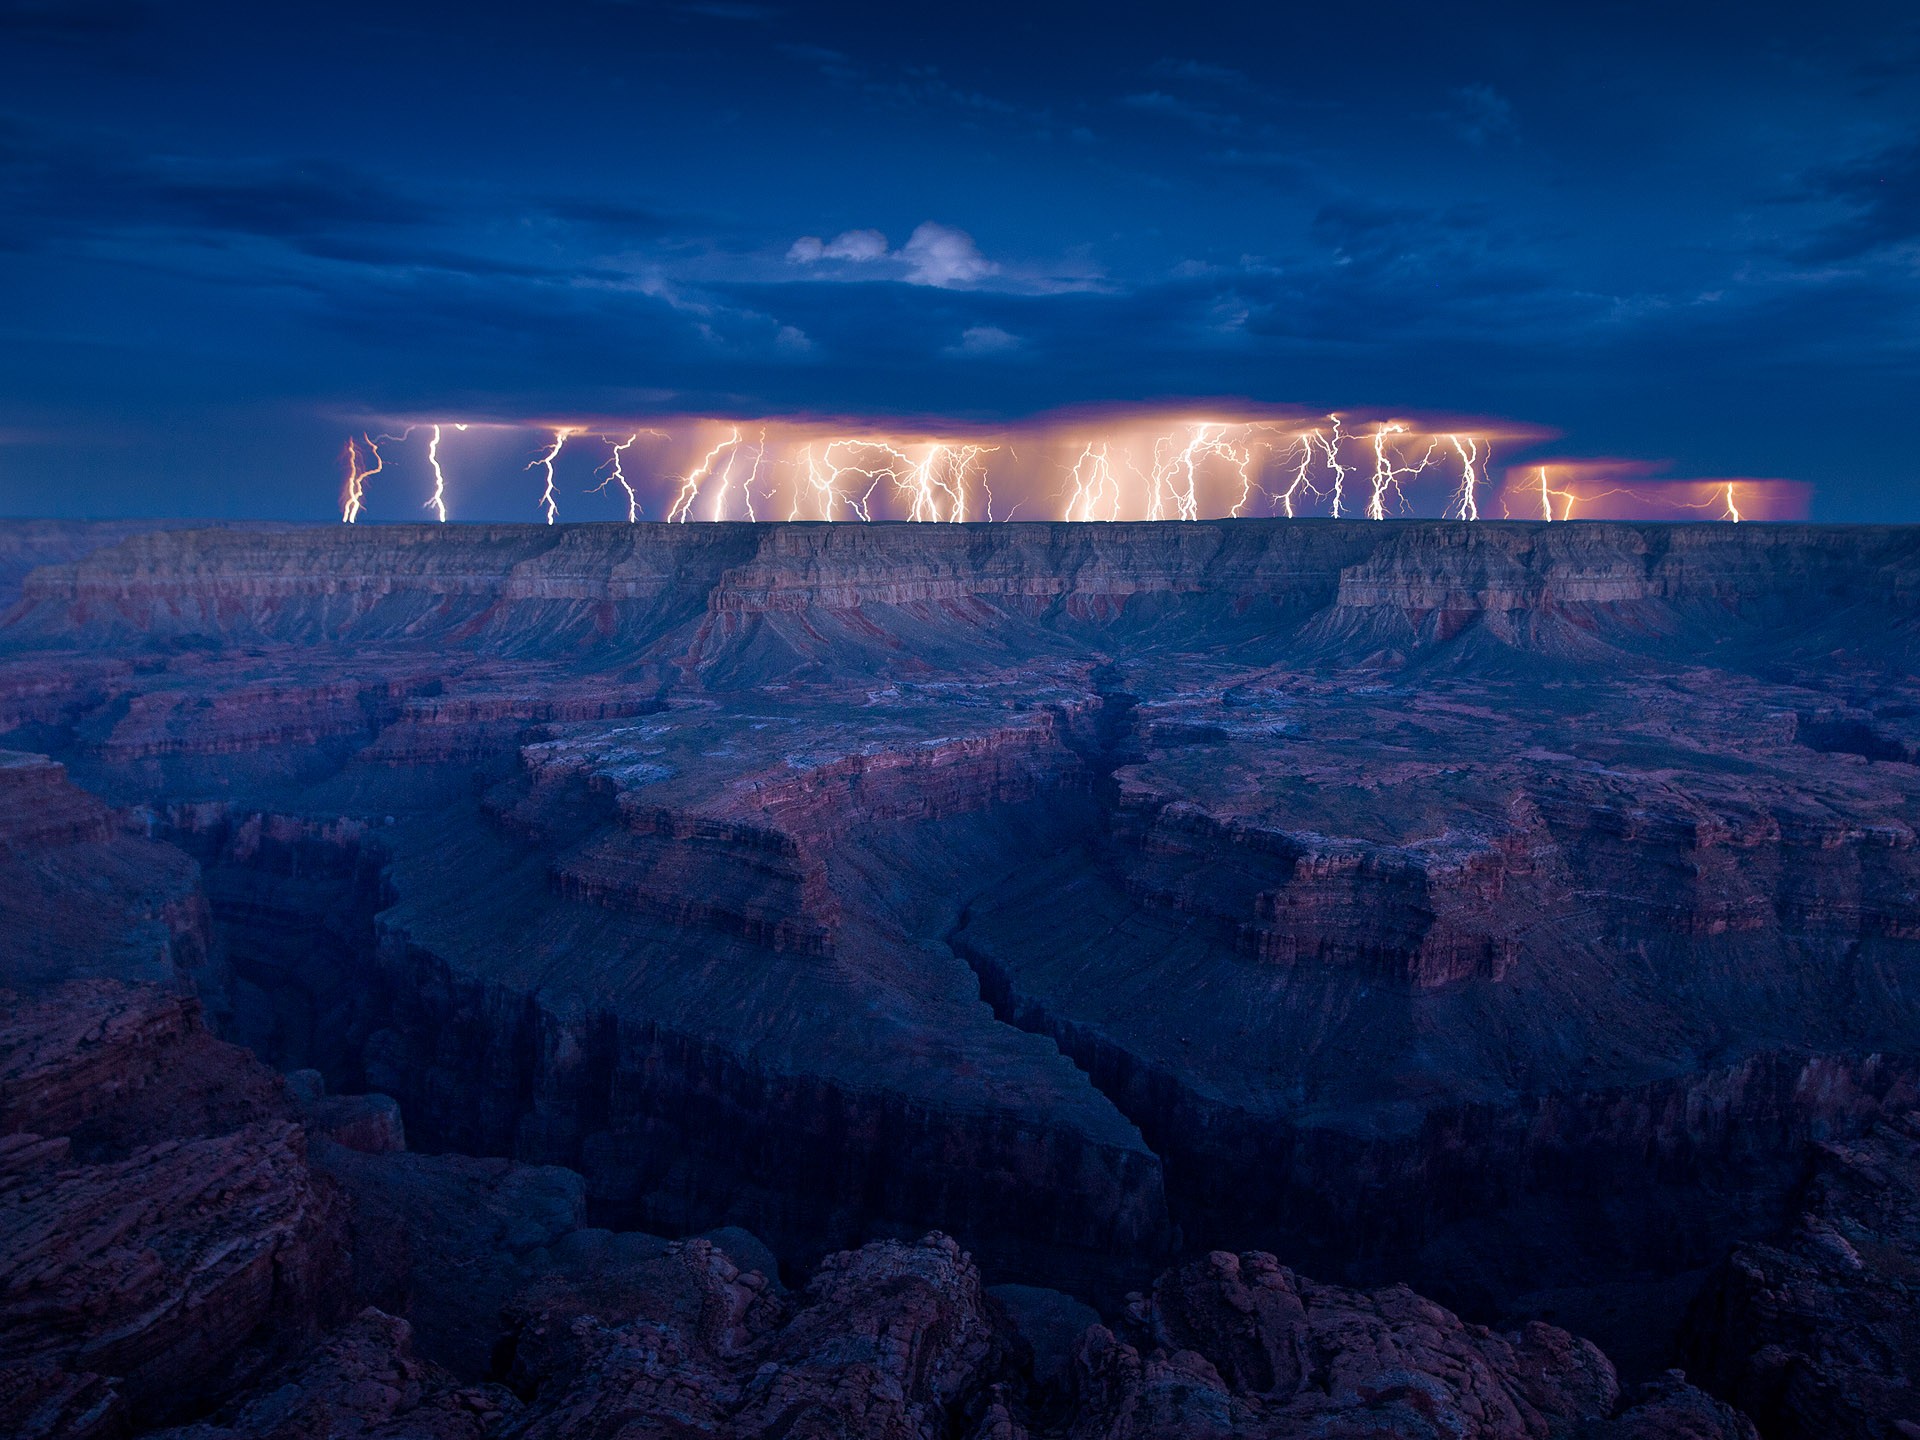 Striking lightning in a captivating landscape.